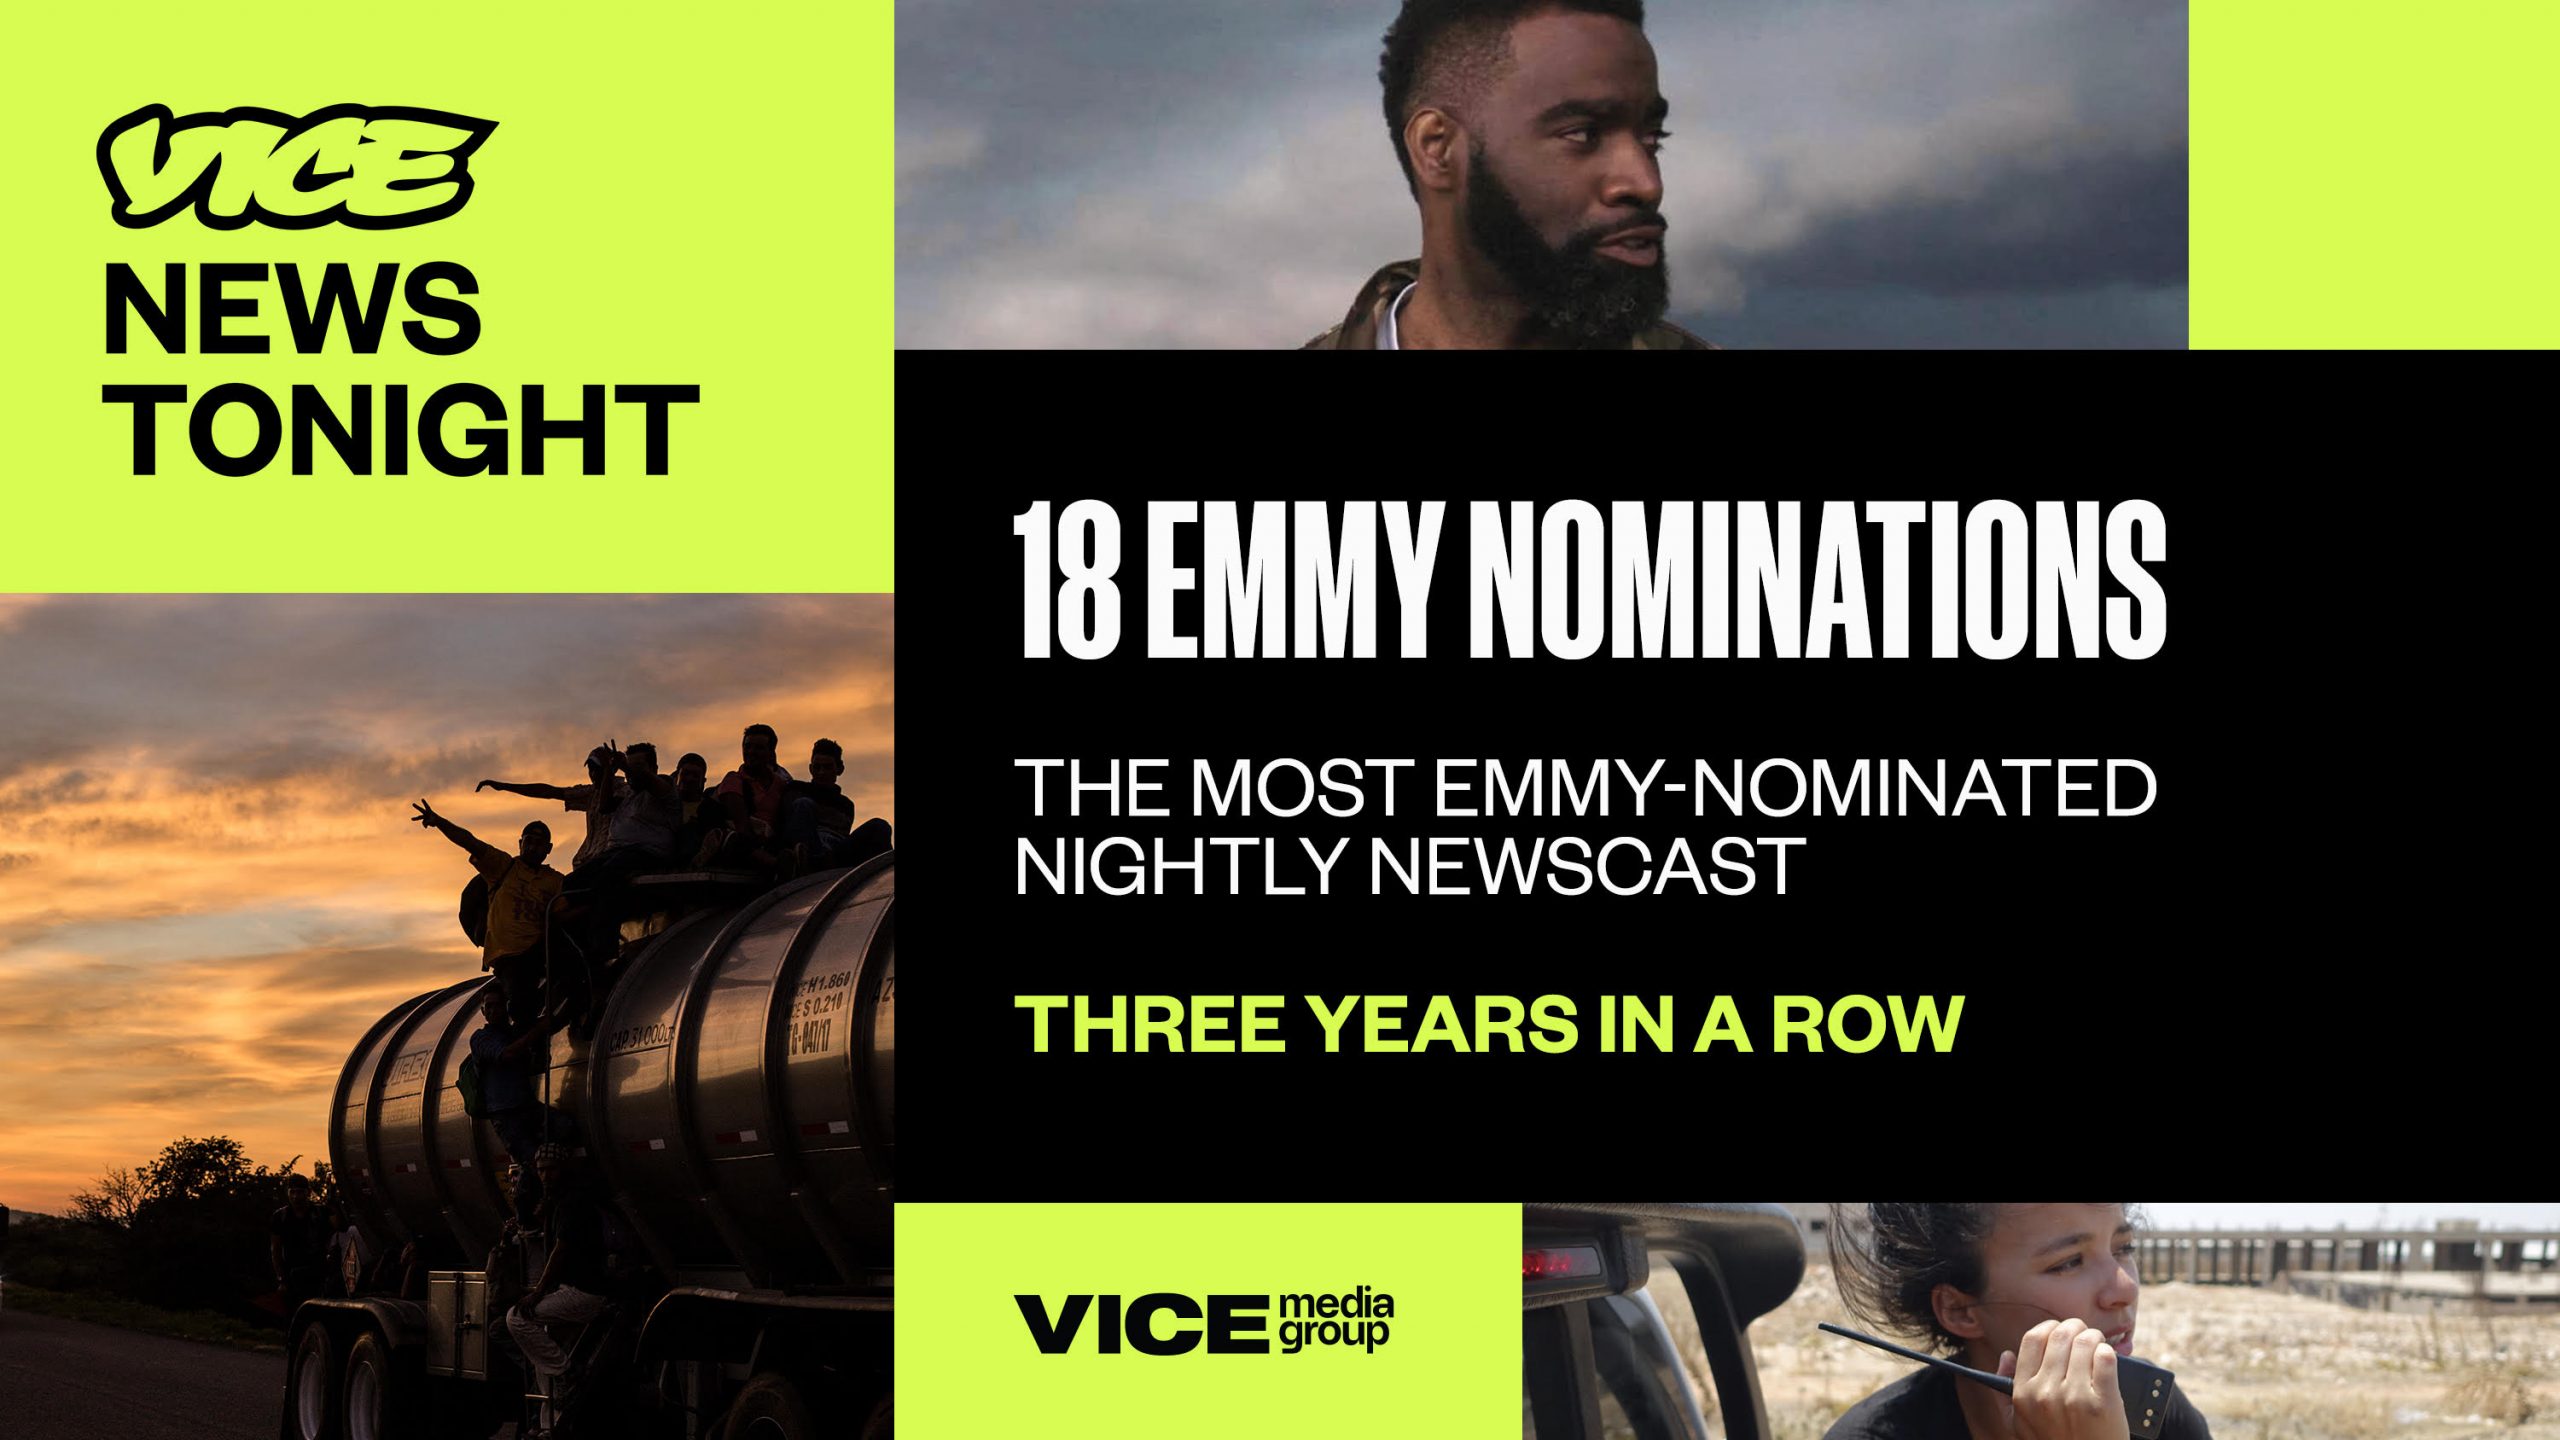 Vice Media Dapatkan Nominasi Terbanyak di Emmy Awards (Gambar via Twitter VICE Communications @VICEComms)